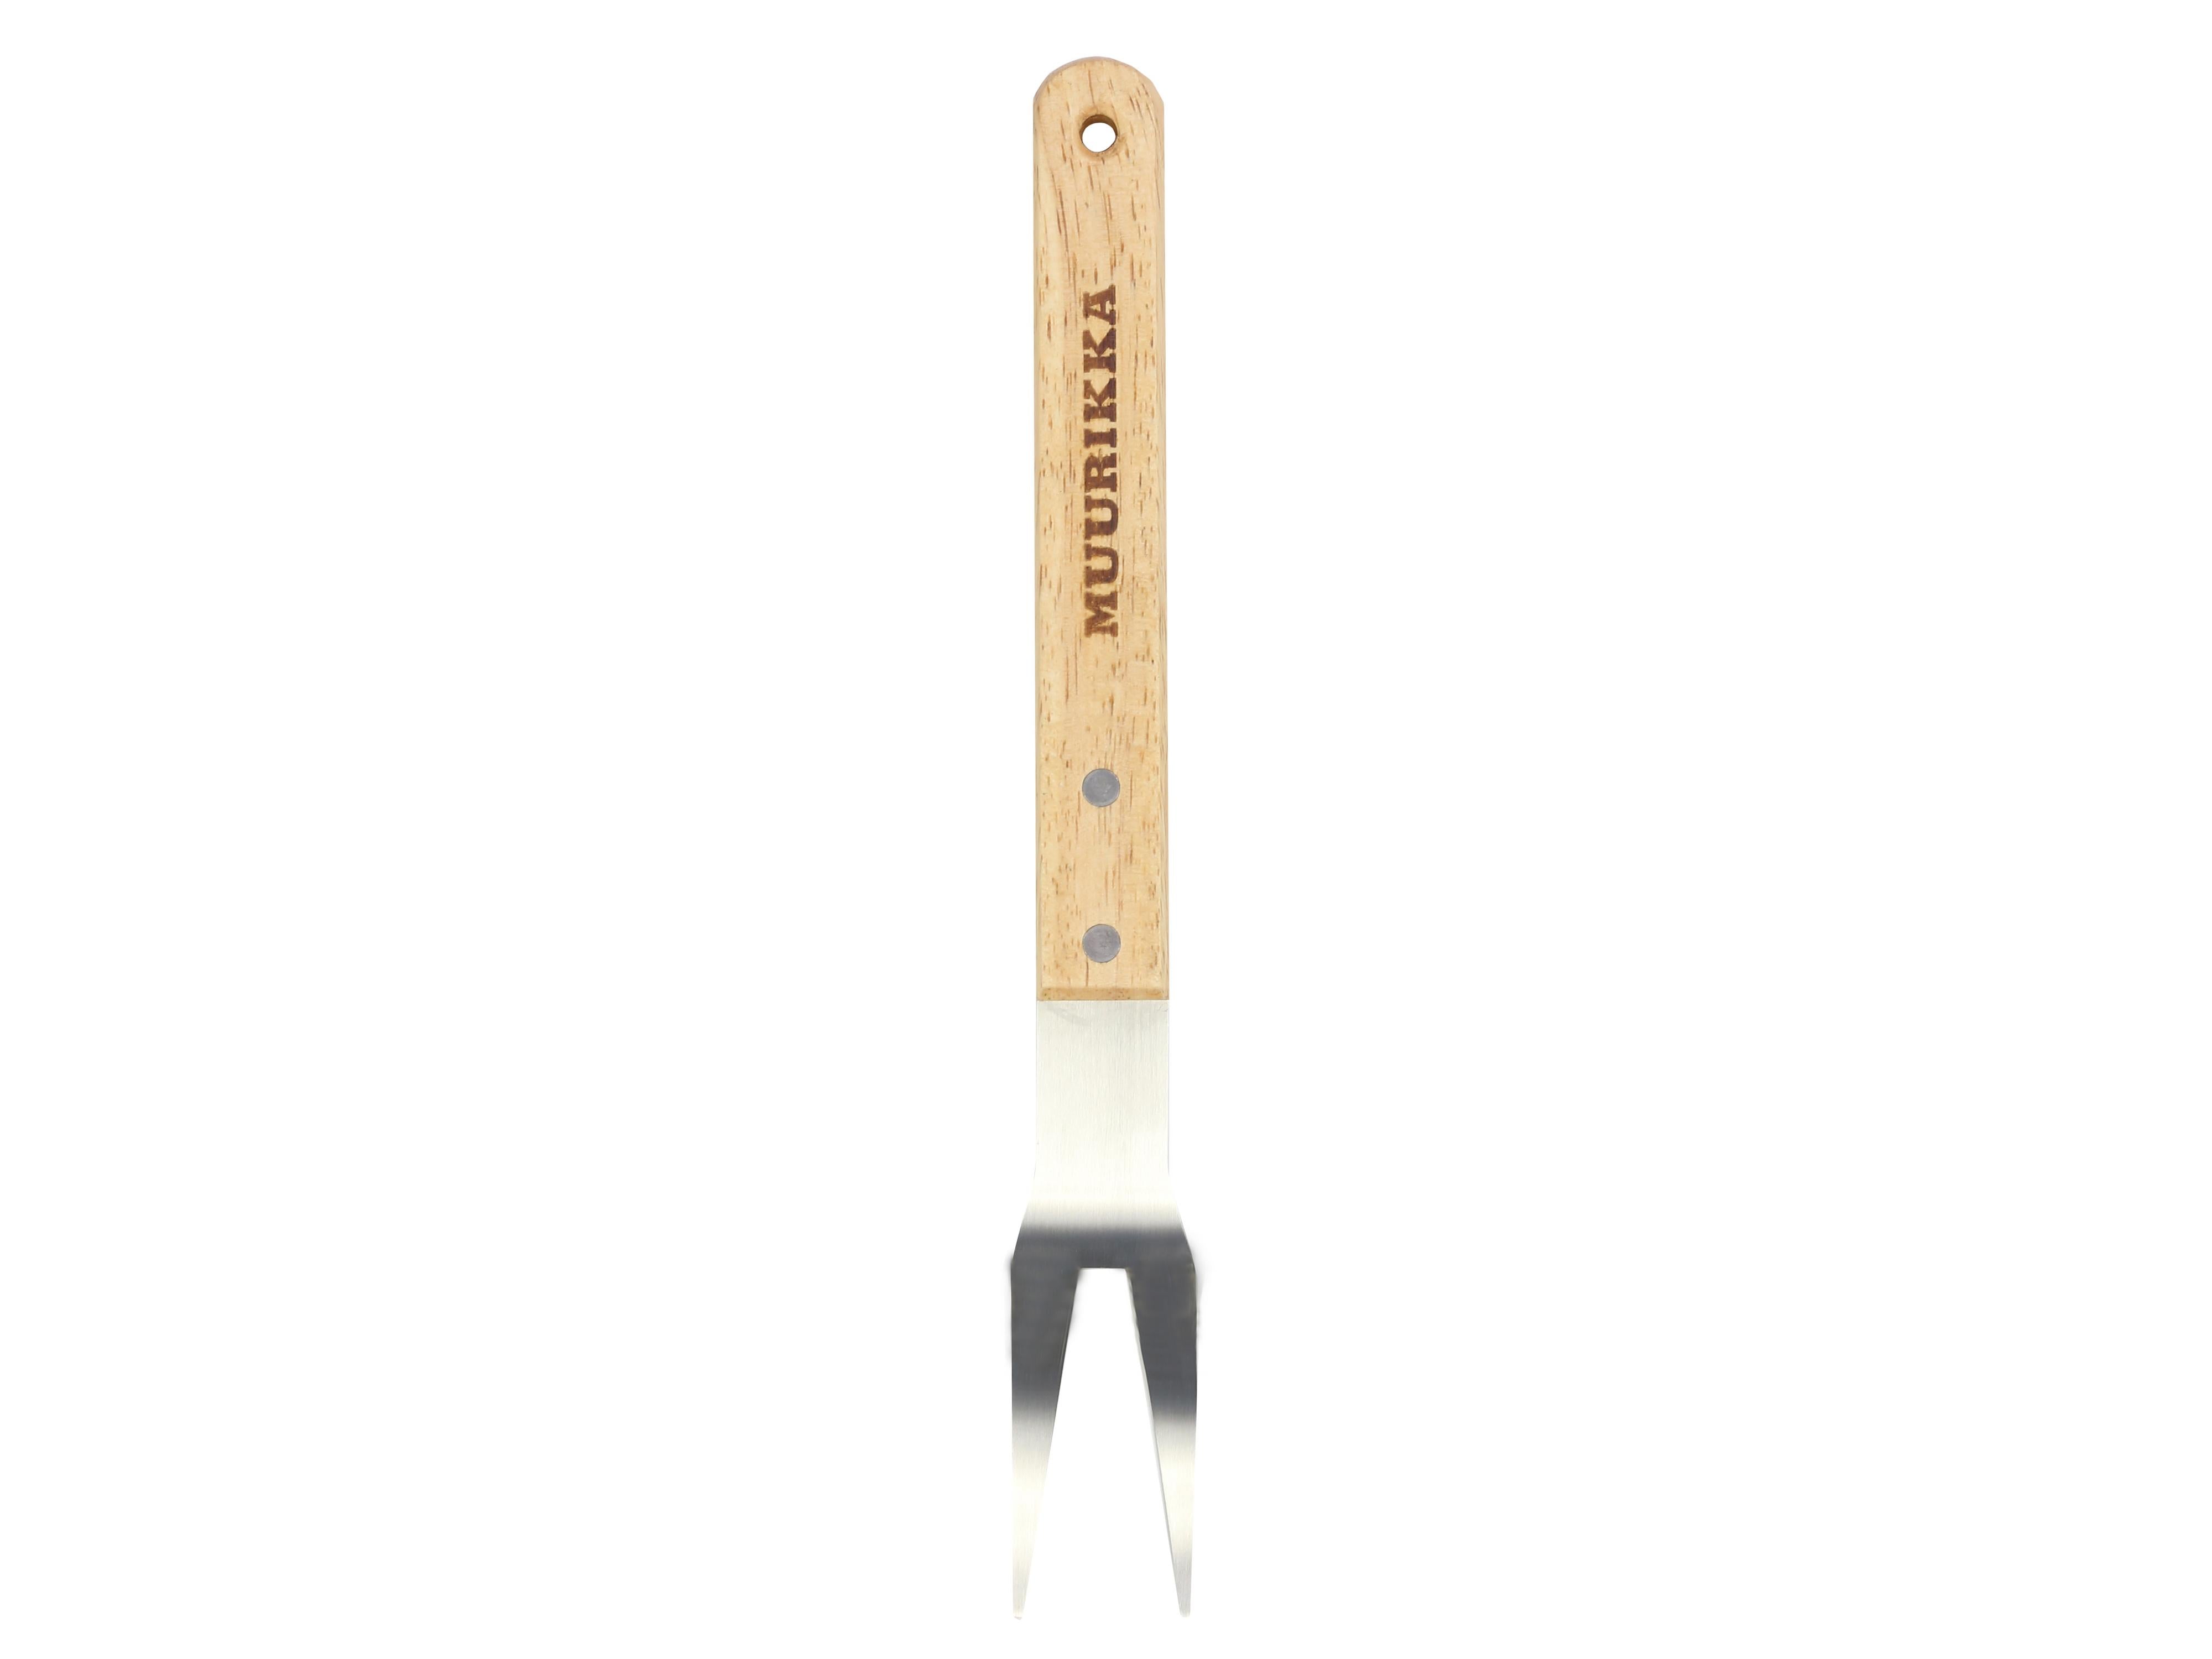 Se Muurikka Grilling Fork 33.5cm - Tilbehør til køkken hos RejseGear.dk